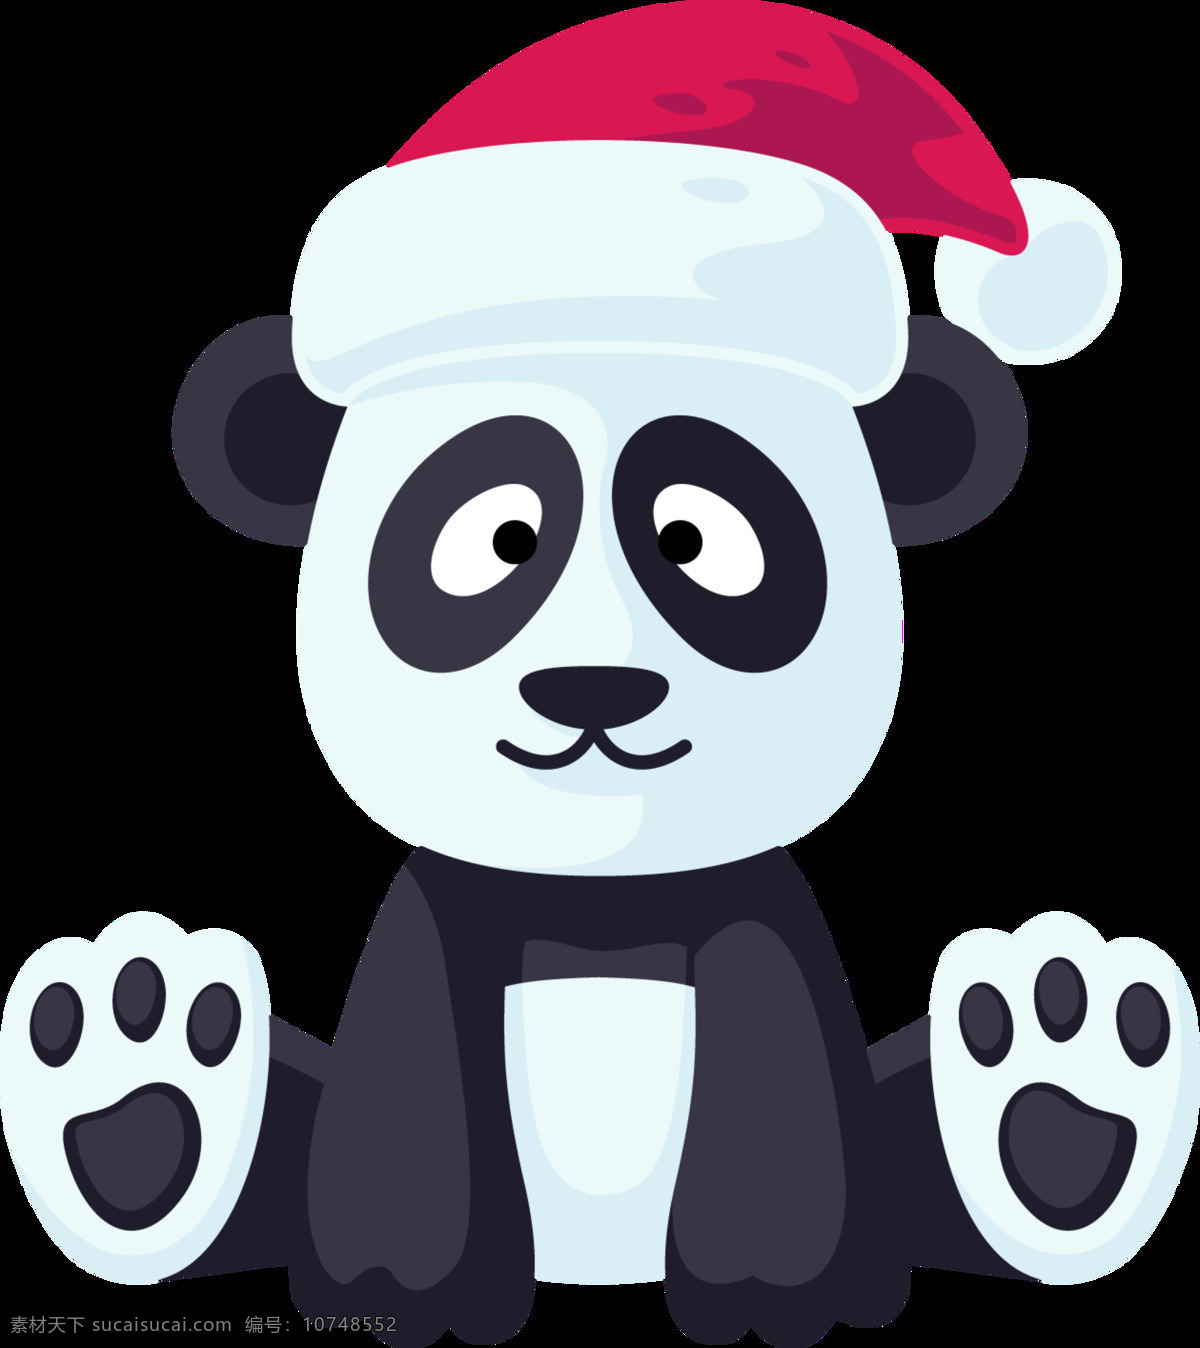 圣诞 小熊猫 透明 动物 黑白 节日 节日素材 卡通 可爱 免扣素材 圣诞节 透明素材 装饰图案